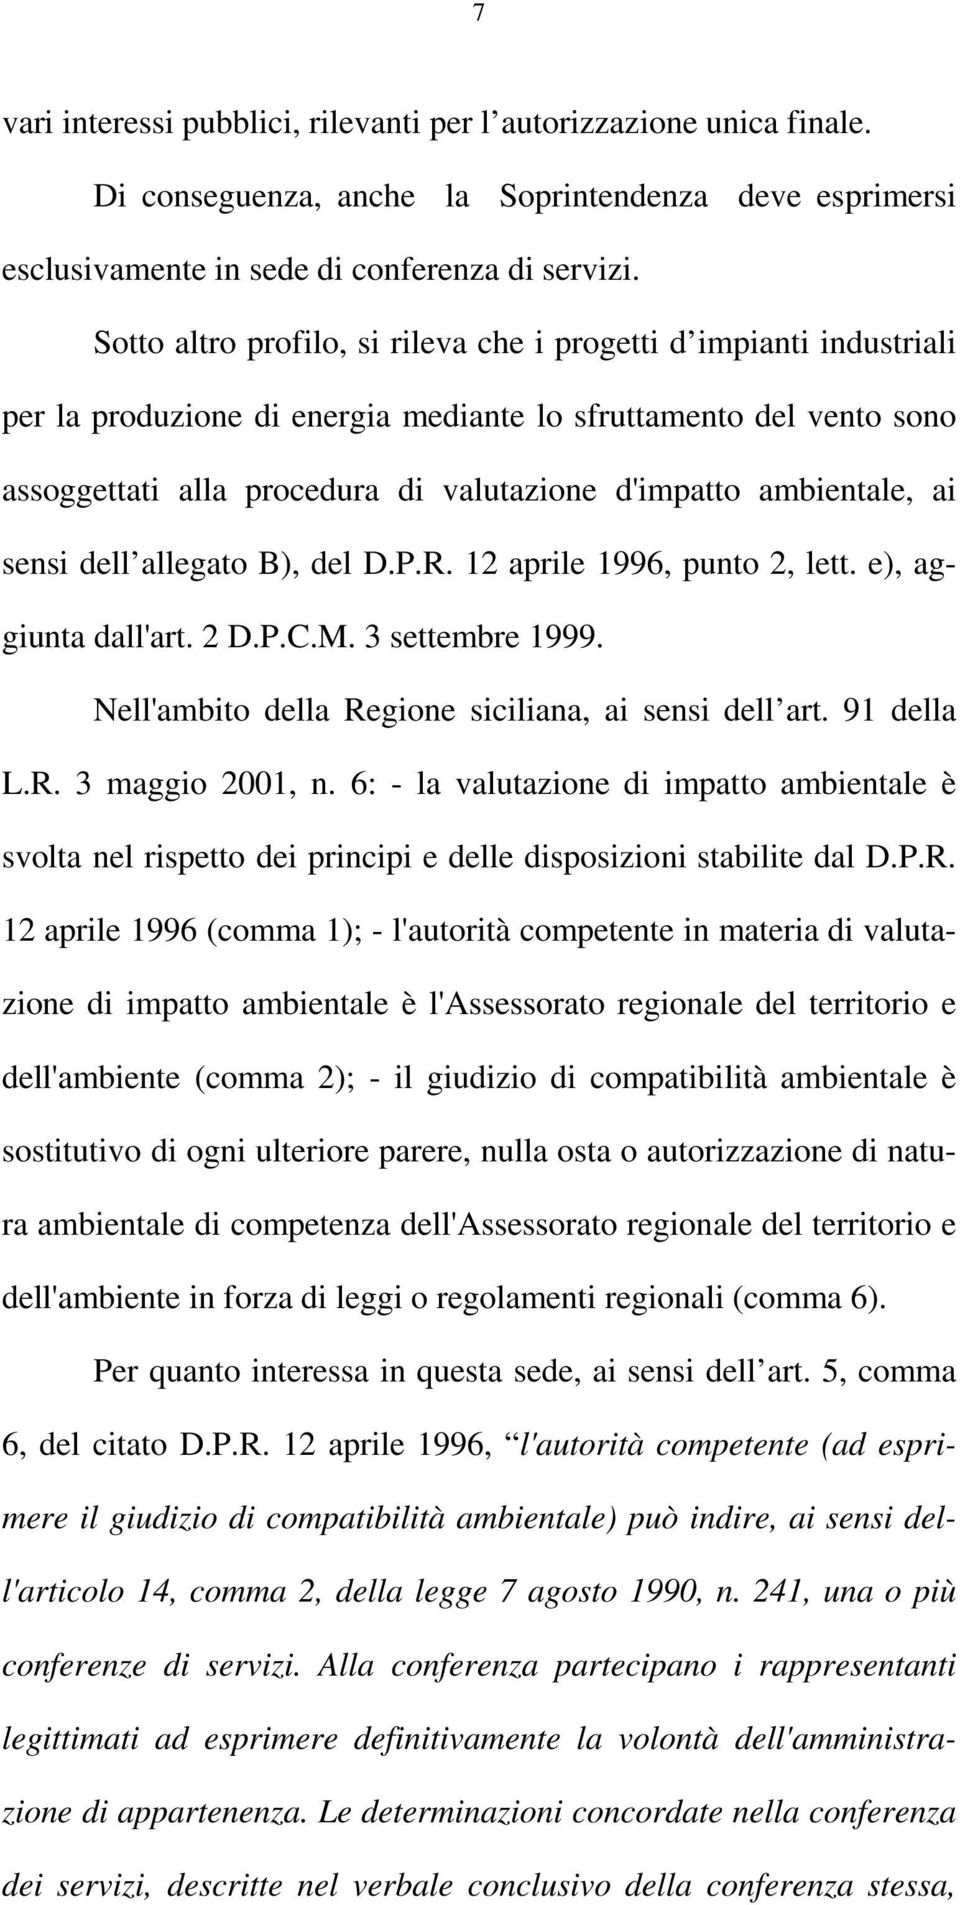 ambientale, ai sensi dell allegato B), del D.P.R. 12 aprile 1996, punto 2, lett. e), aggiunta dall'art. 2 D.P.C.M. 3 settembre 1999. Nell'ambito della Regione siciliana, ai sensi dell art. 91 della L.